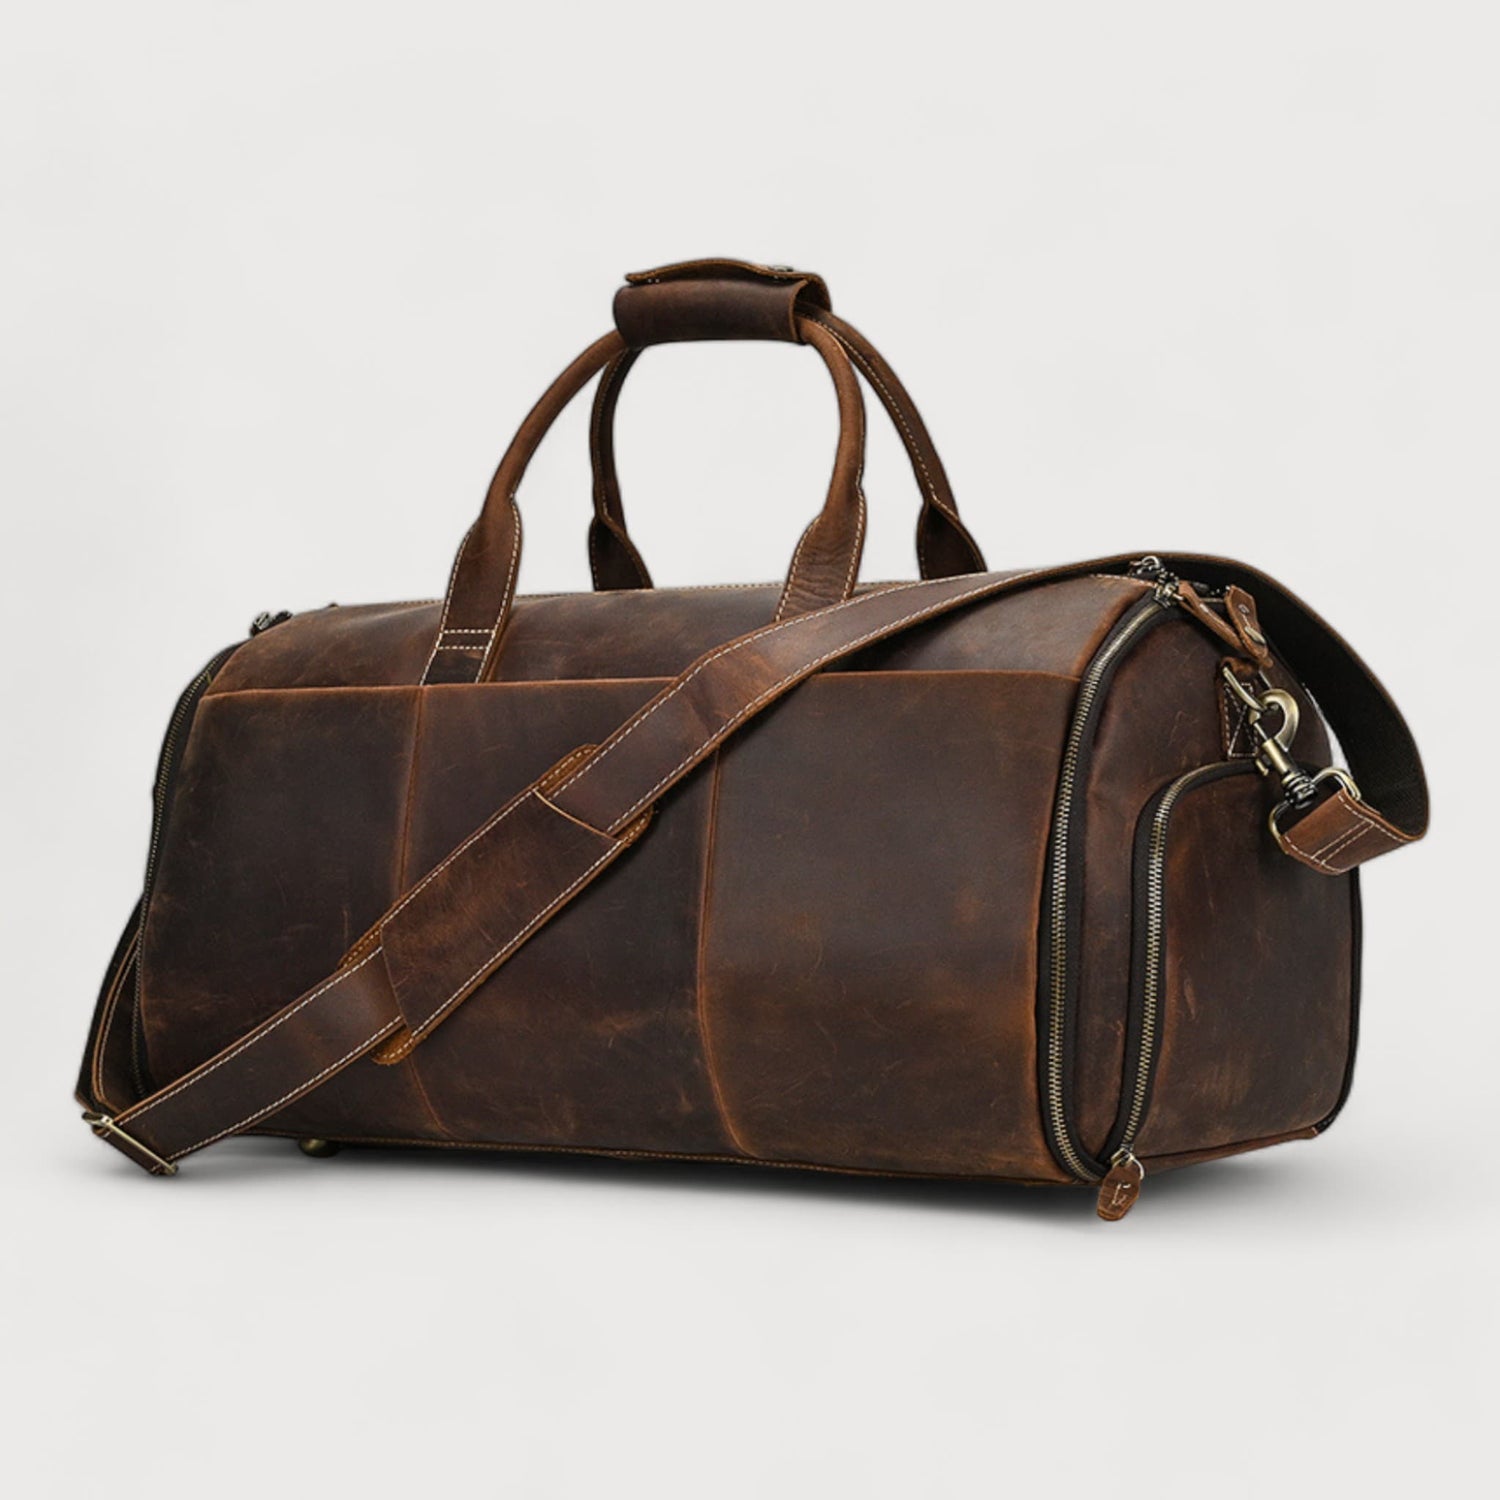 Des sacs de voyage en cuir pour la qualité et le style